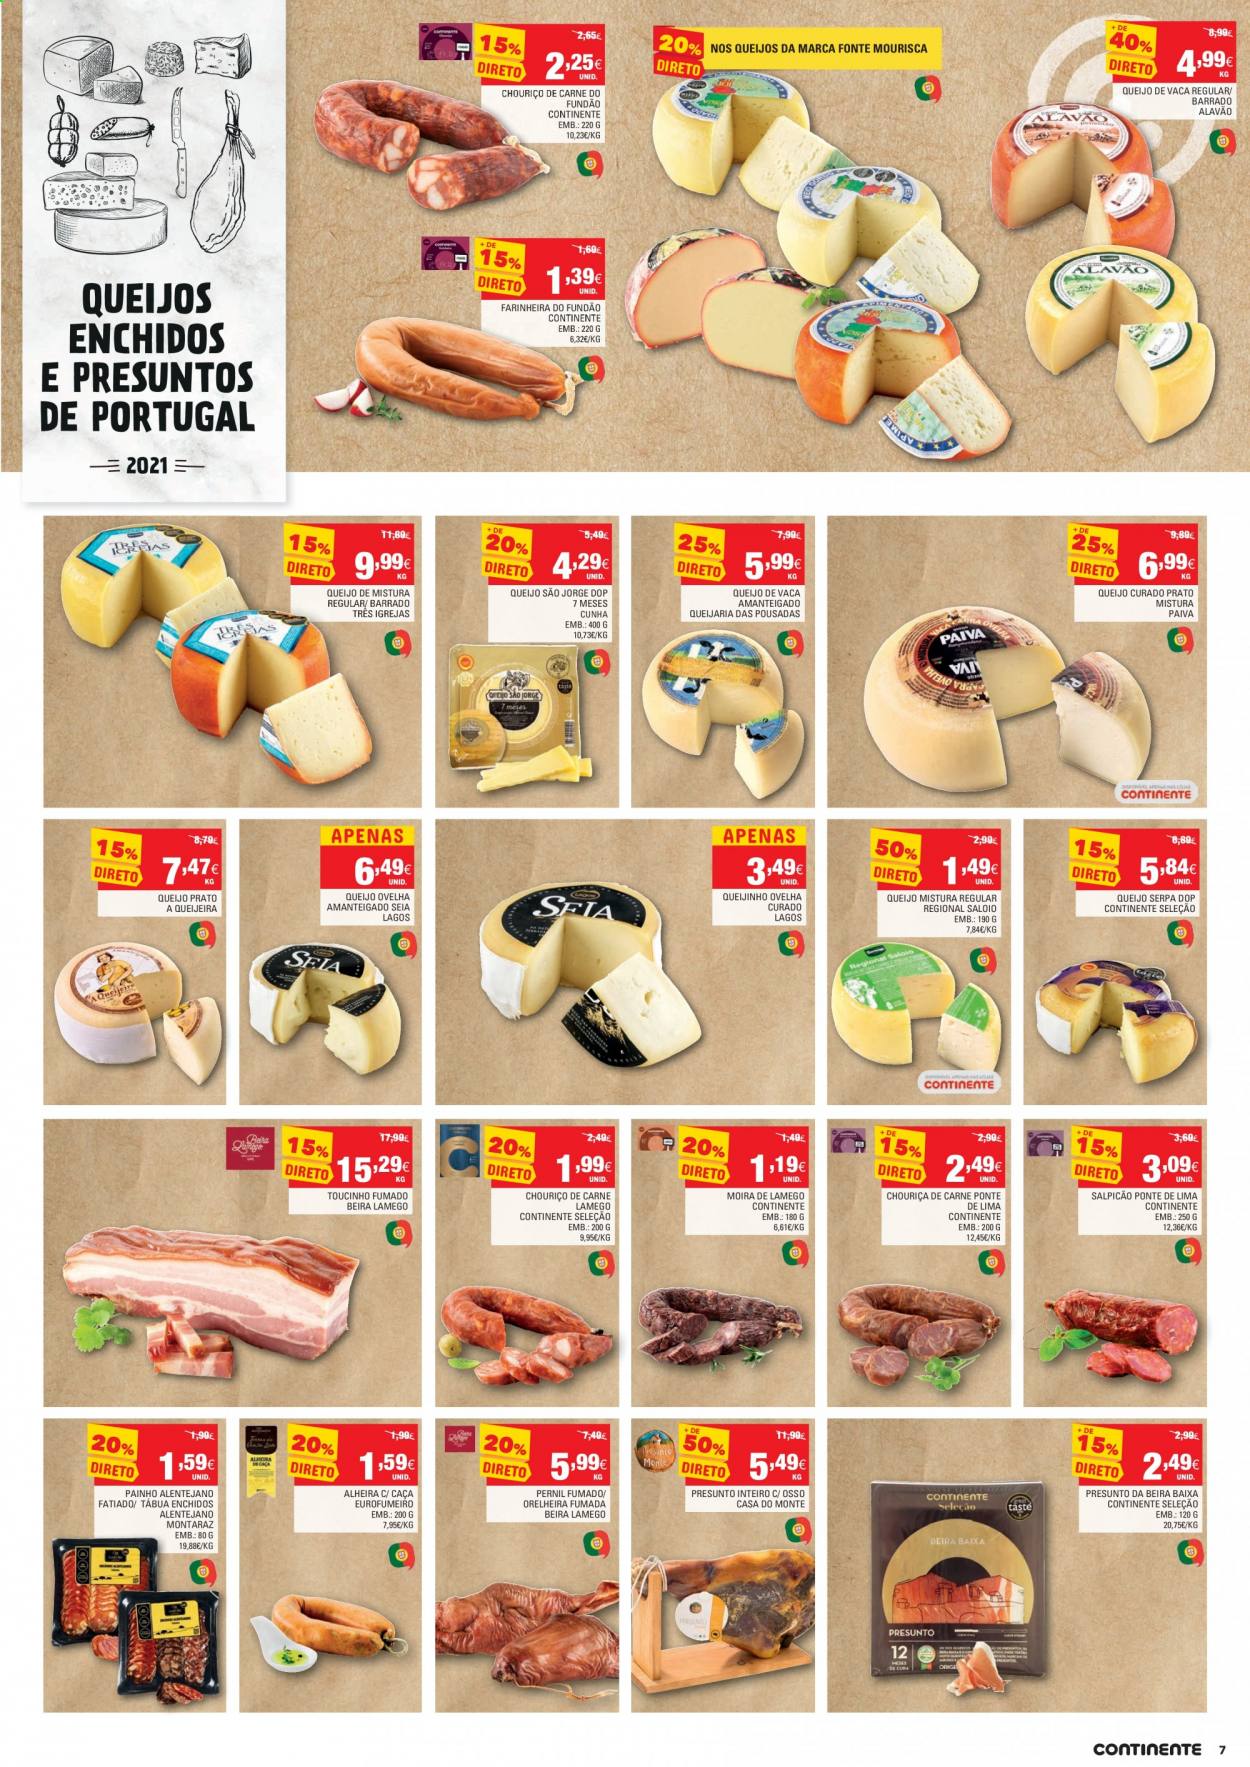 thumbnail - Folheto Continente - 18.5.2021 - 24.5.2021 - Produtos em promoção - lima, pernil, bacon, chouriço, alheira, queijo, queijo prato, queijo curado, toucinho. Página 7.